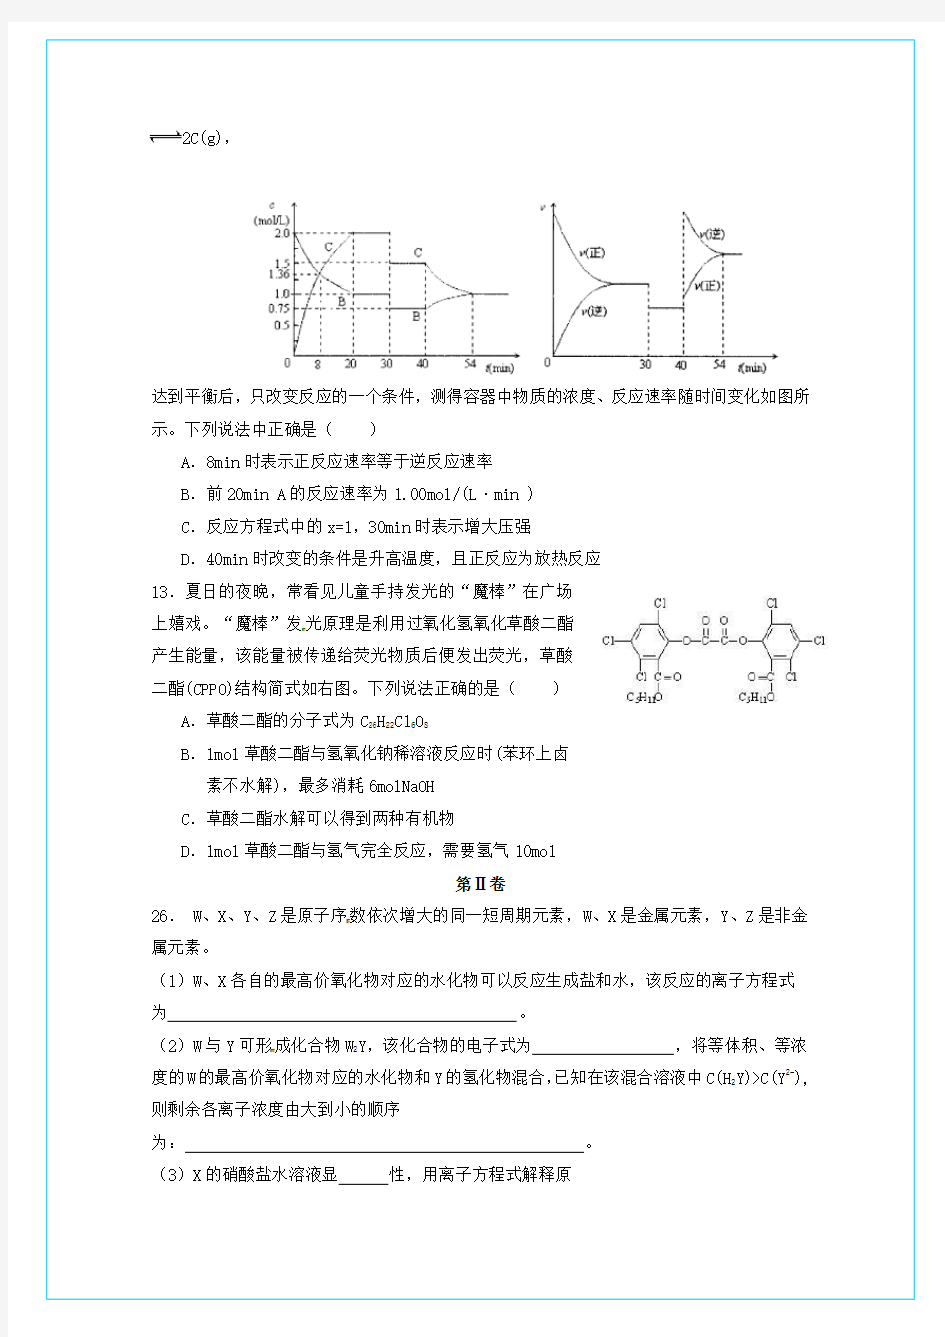 河南省宜阳实验中学2020年高考化学二轮7+3+2模拟试题1